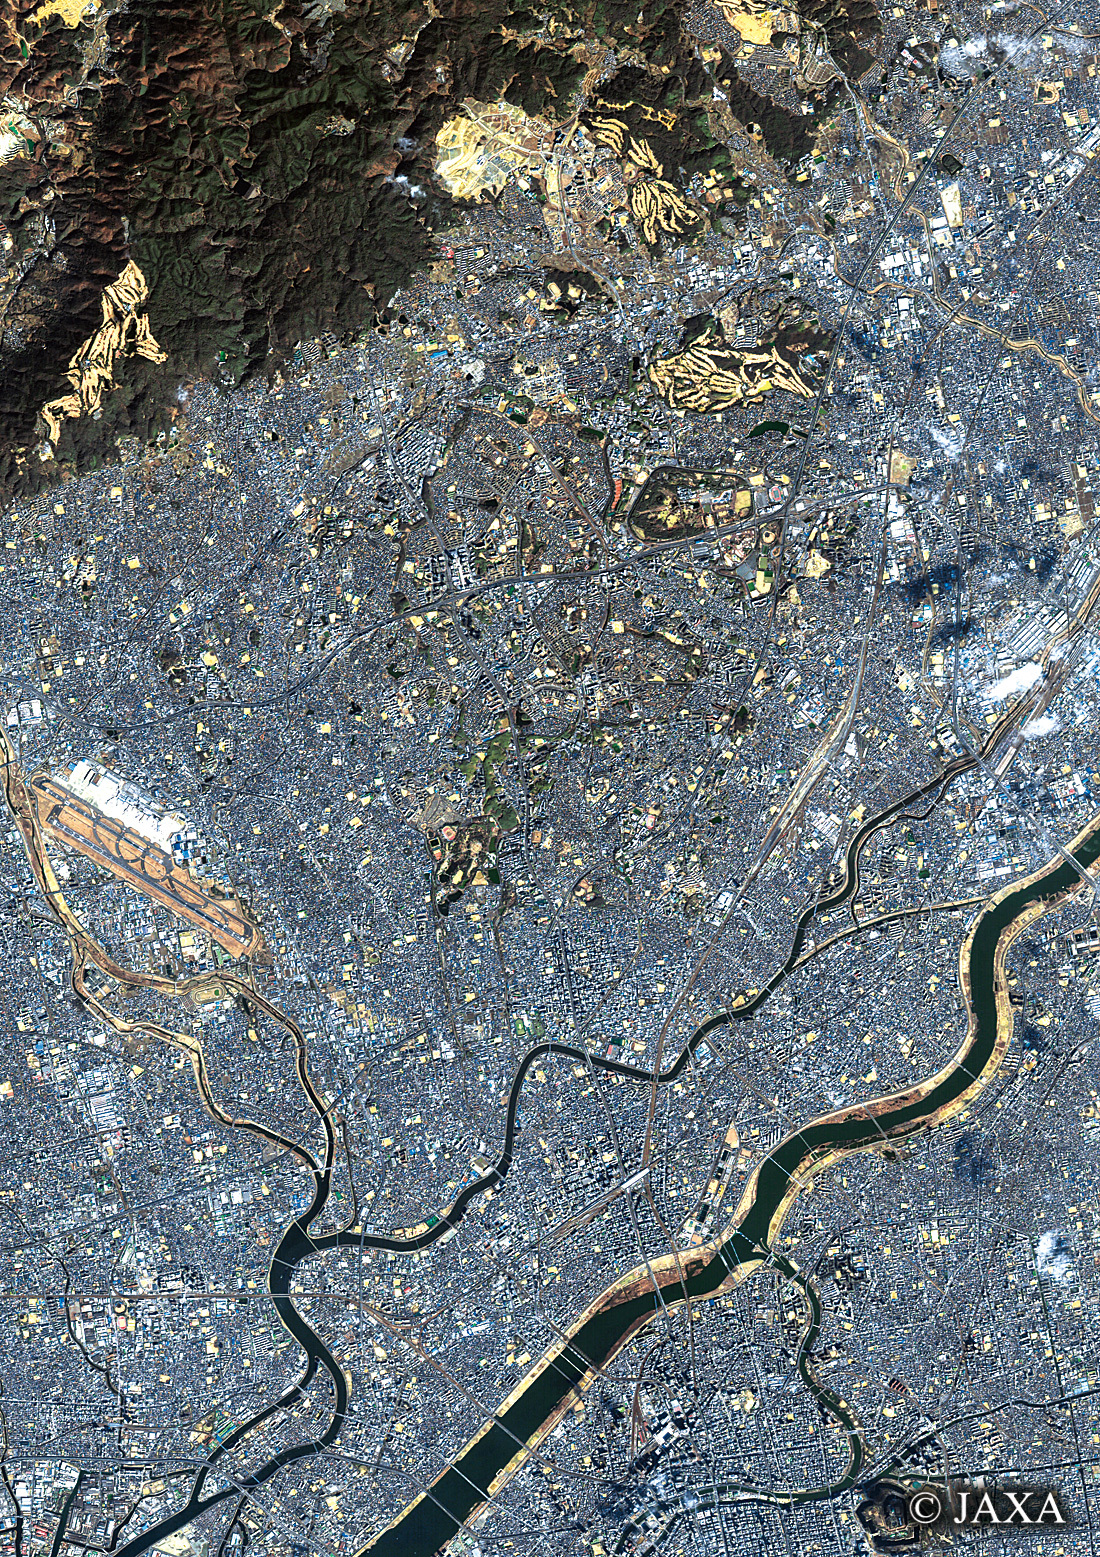 だいちから見た日本の都市 吹田市周辺:衛星画像